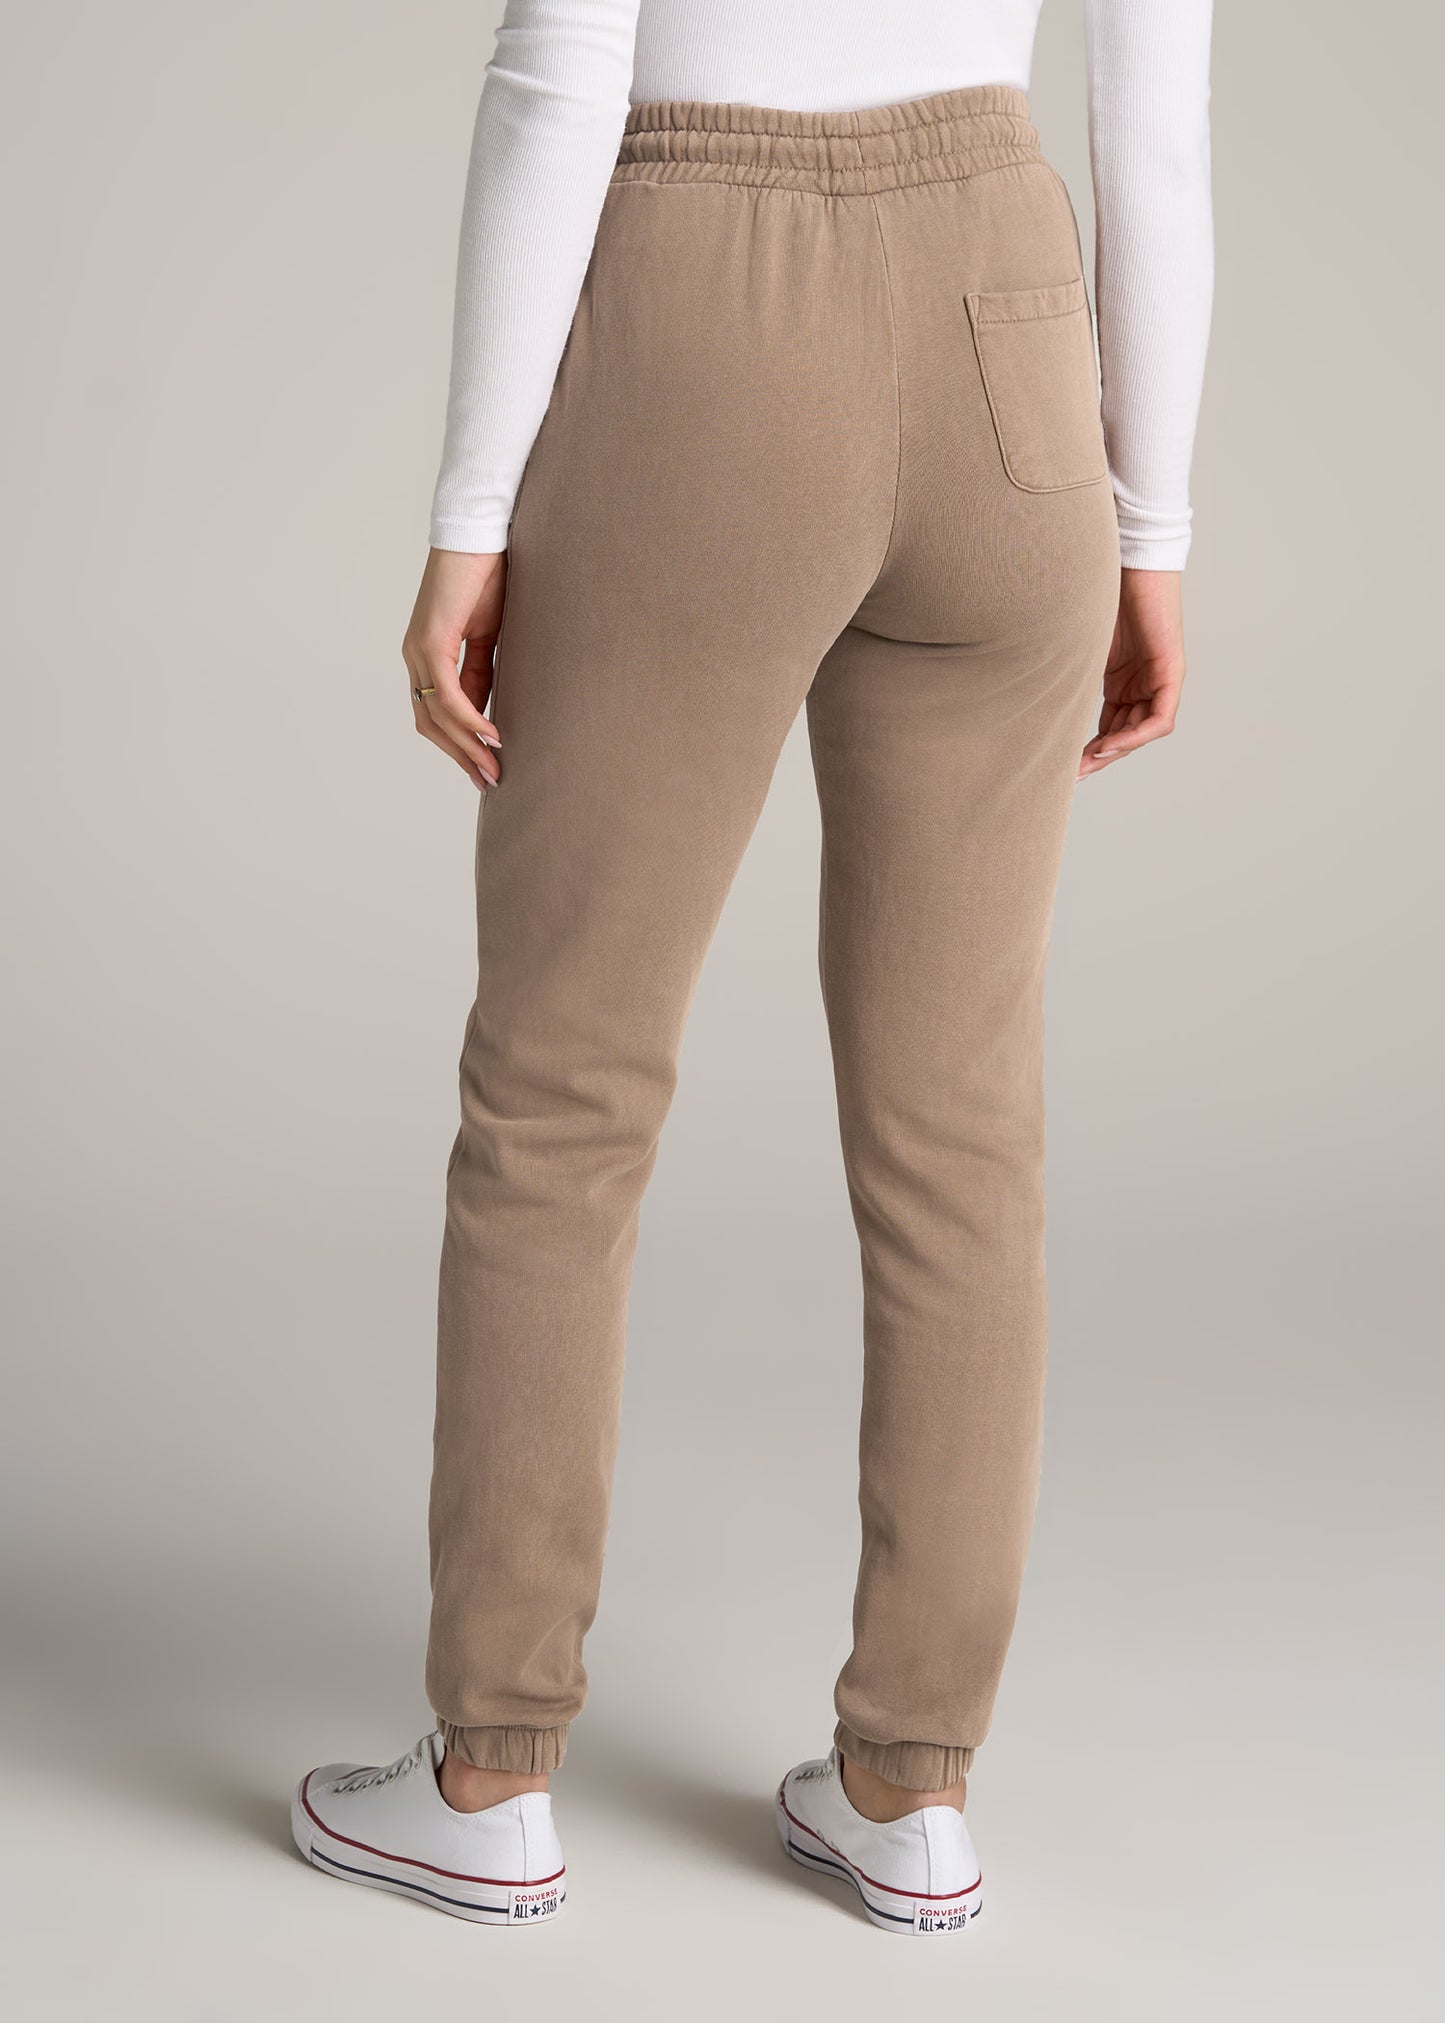 Wearever Fleece Regular Fit Women's Tall Sweatpants in Charcoal